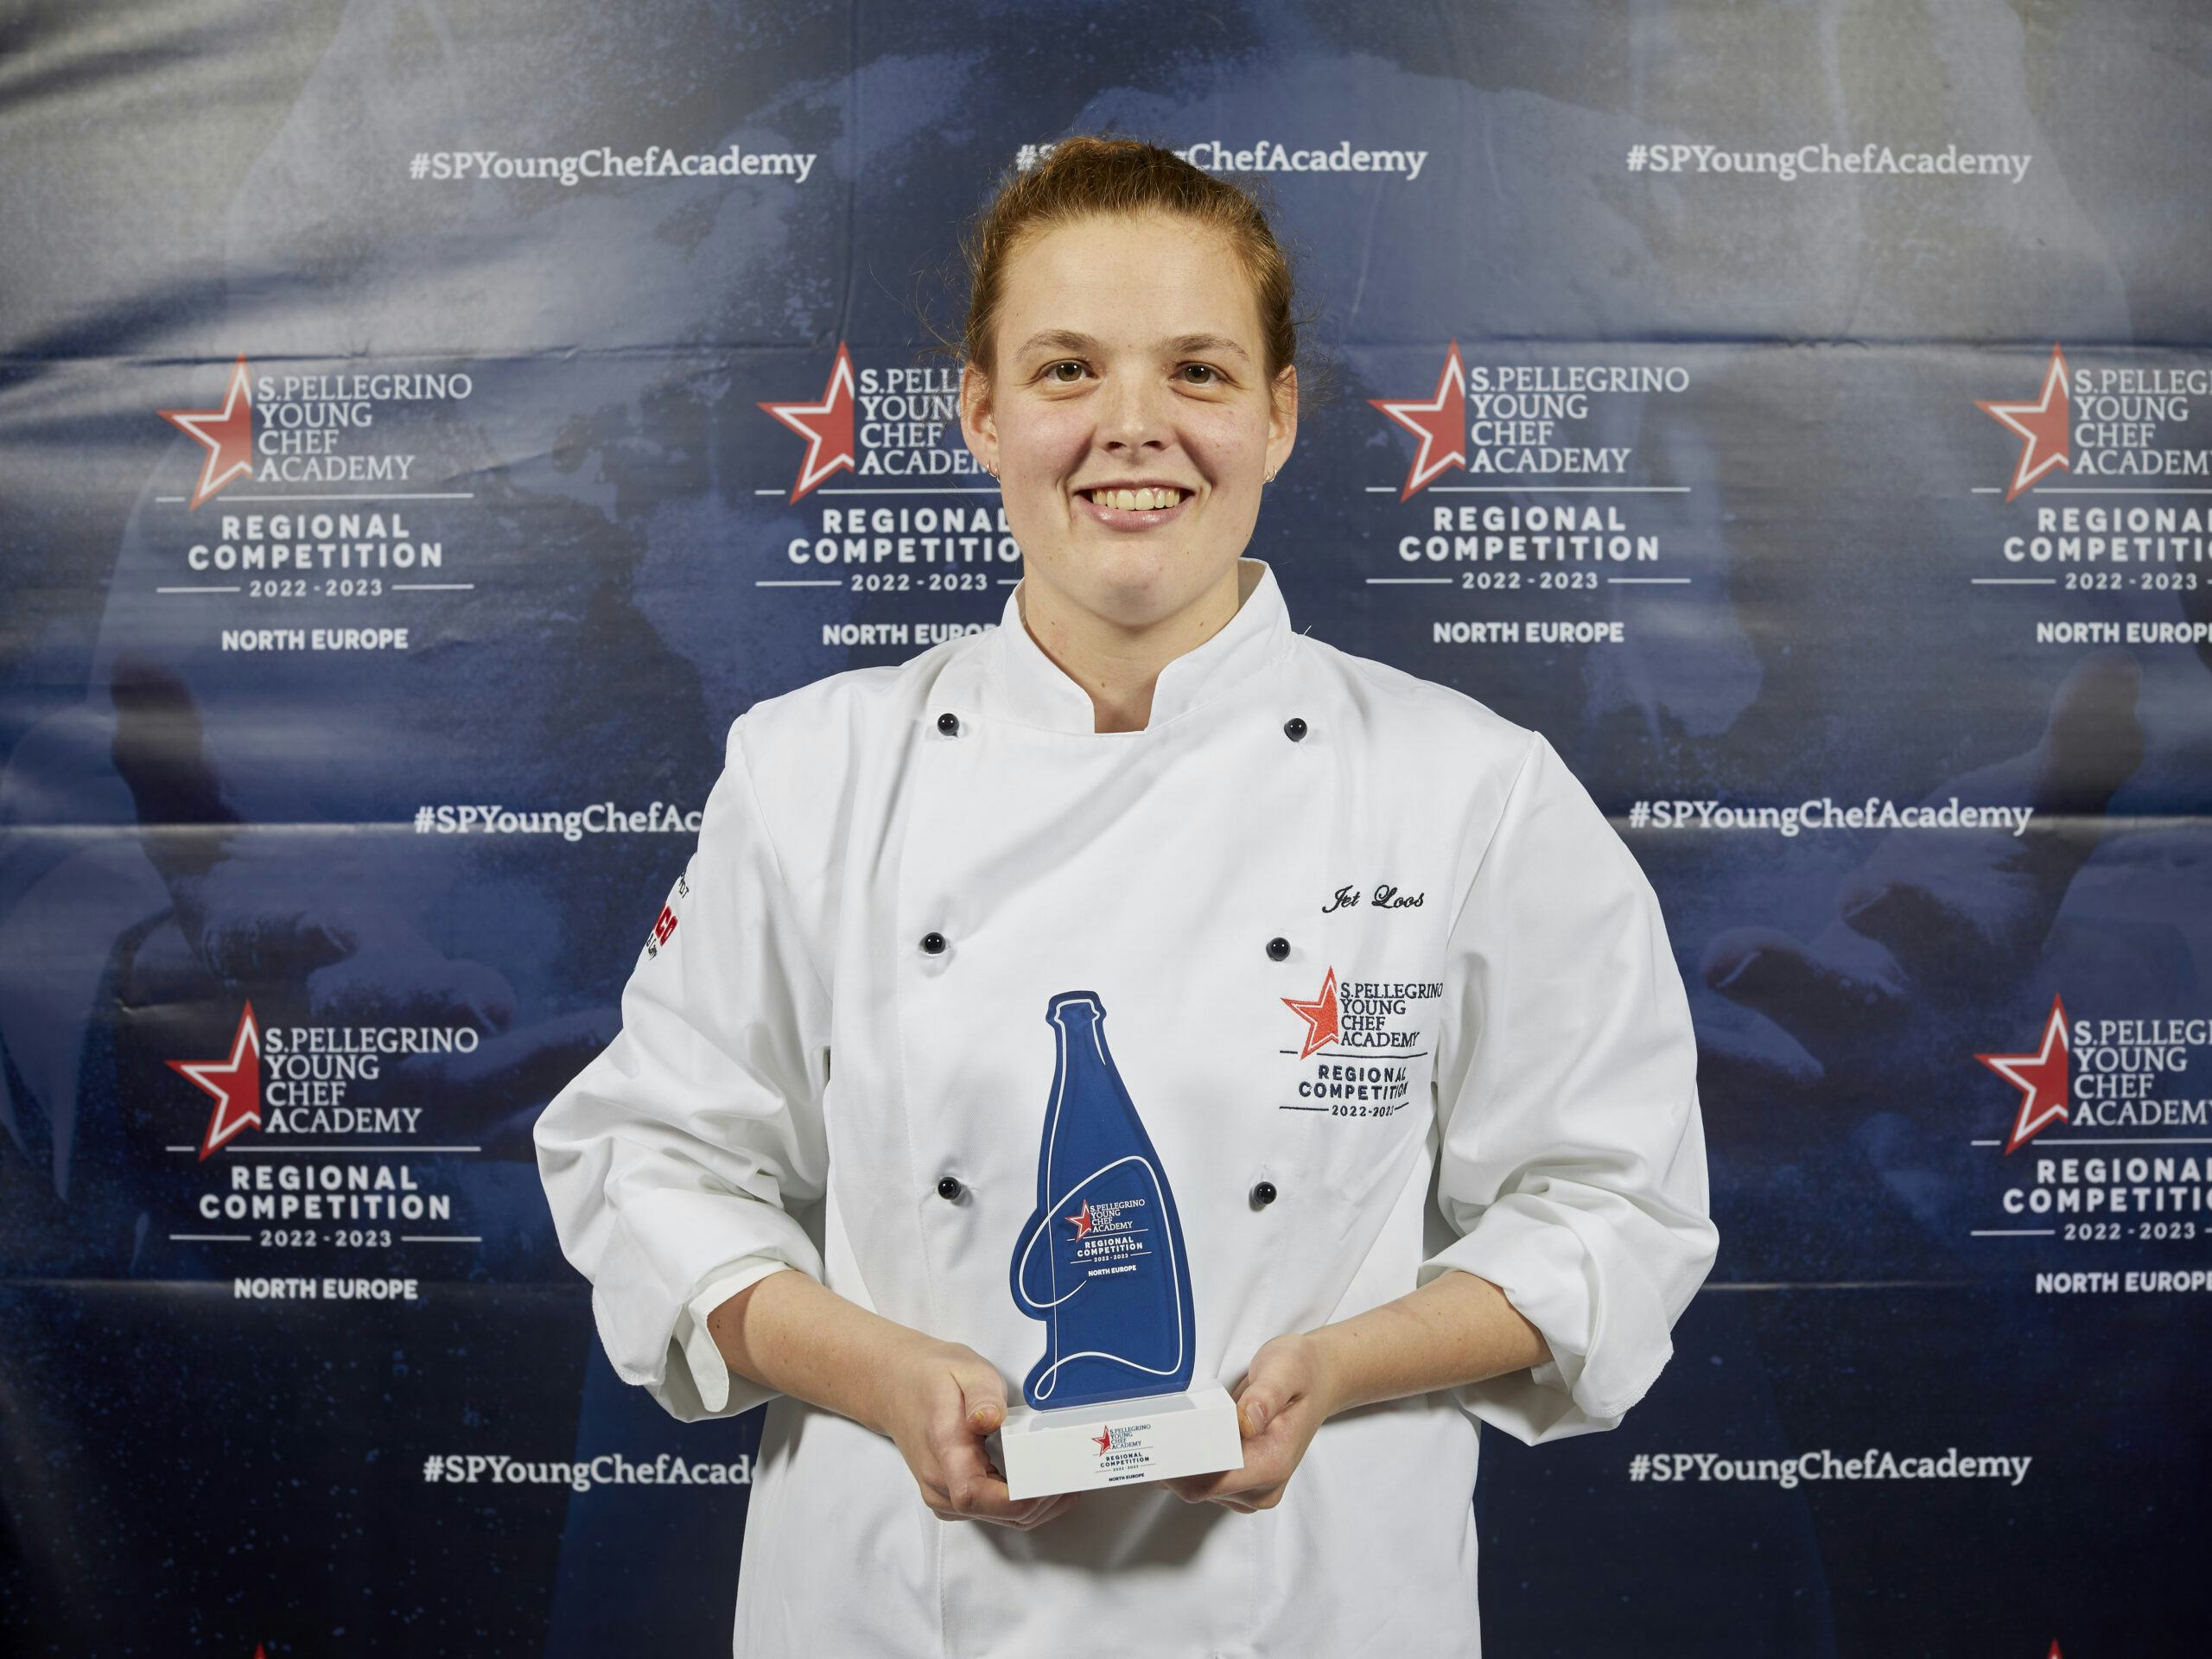 Nederlandse finalist in wereldwijde competitie 'Worlds Best Young Chef'